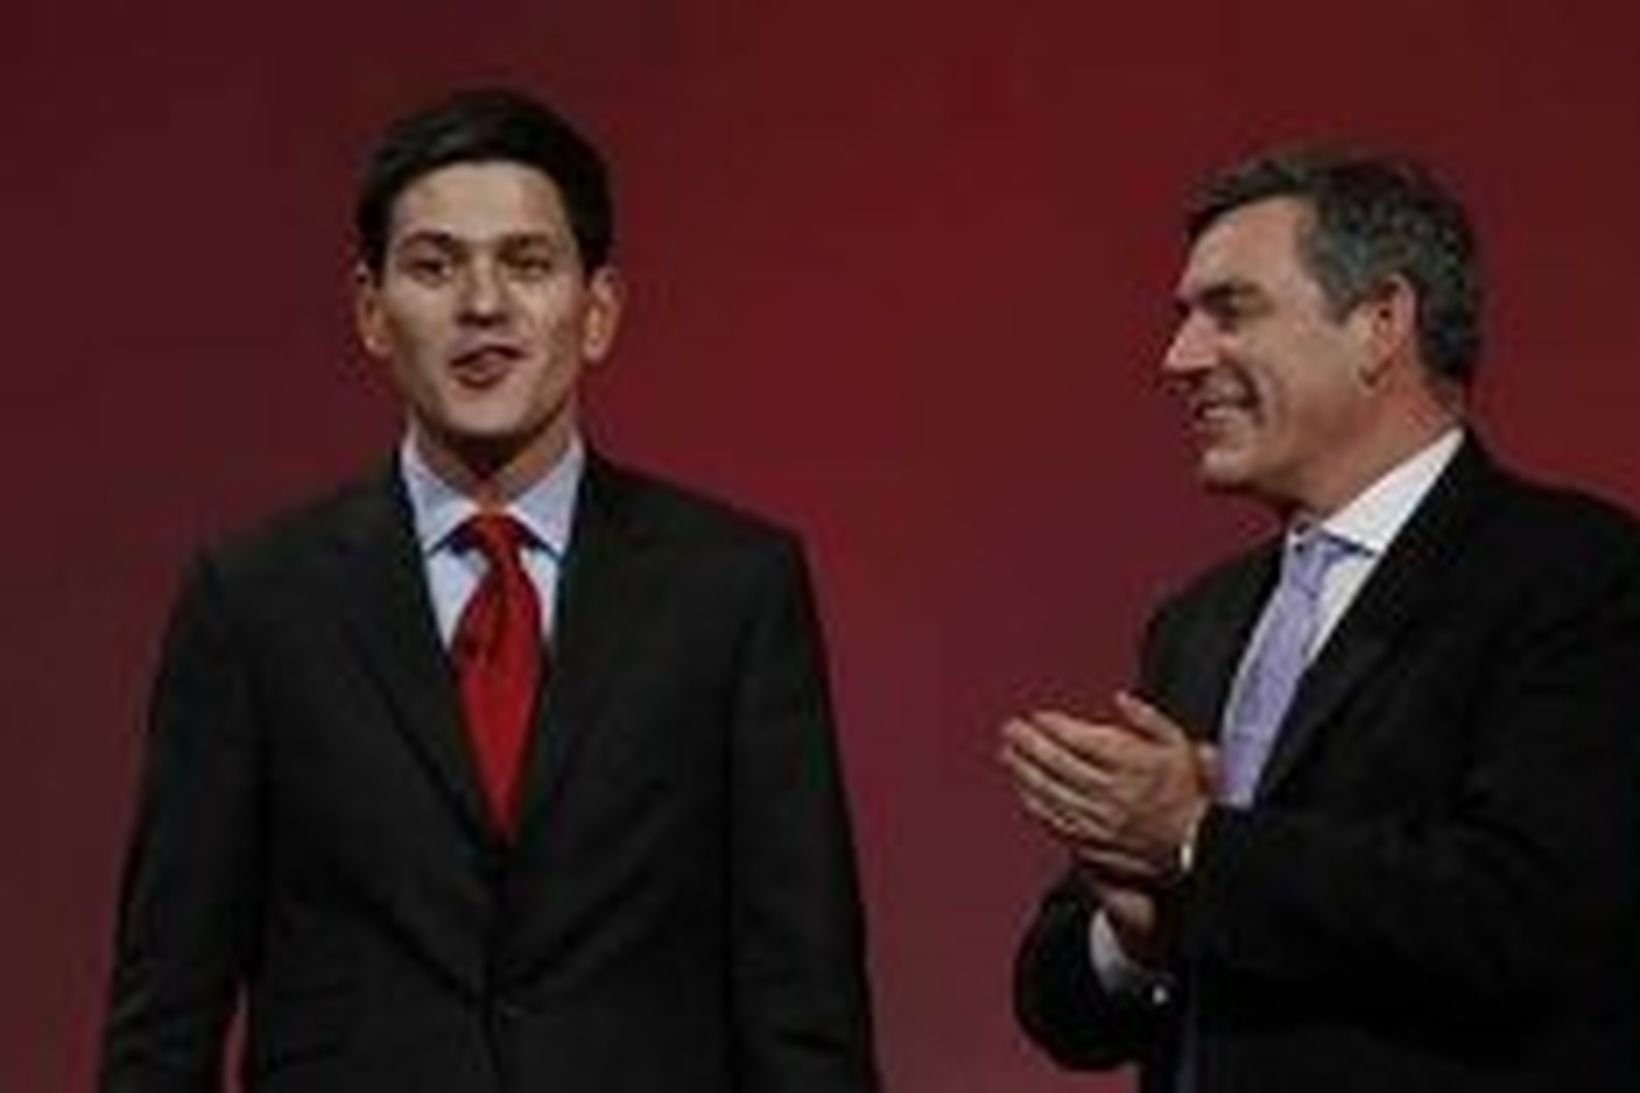 David Miliband fékk klapp í lófa frá Gordon Brown í …